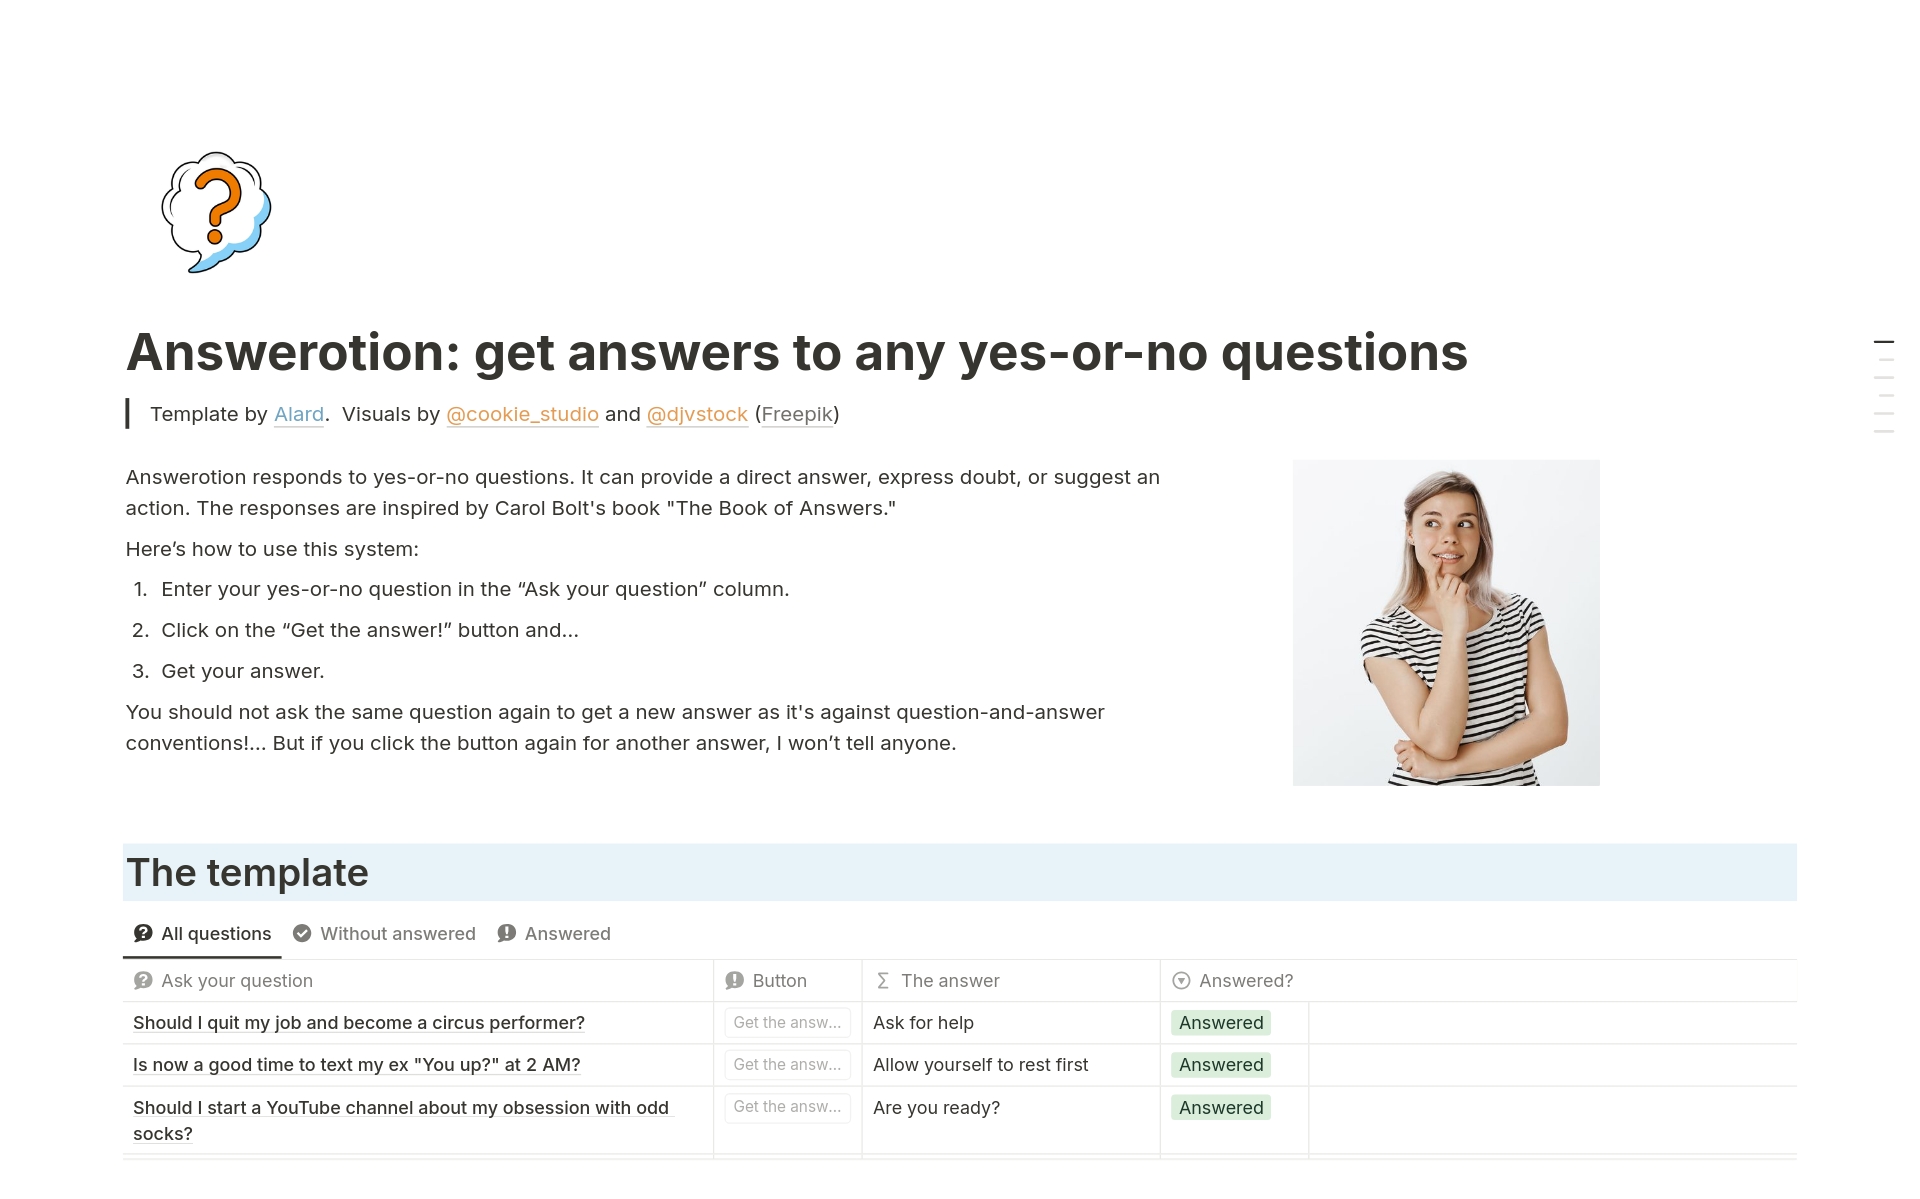 Uma prévia do modelo para Answerotion: get answers to yes-or-no questions